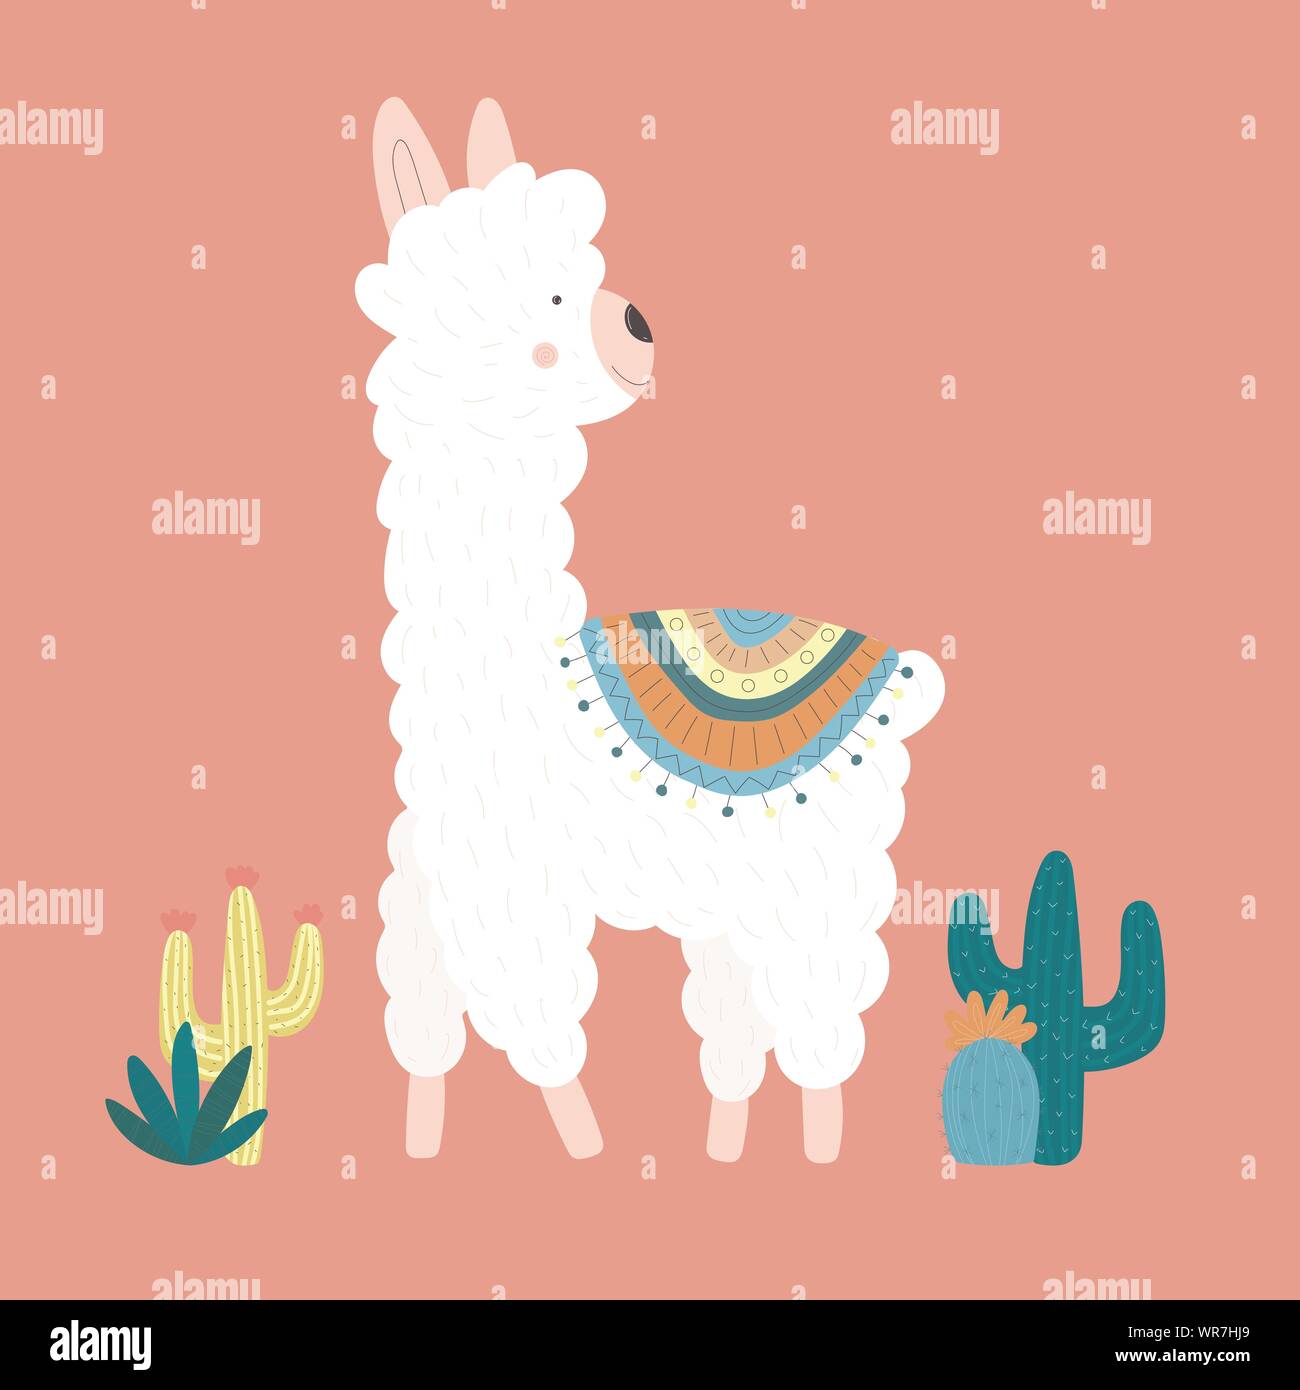 Vector Illustration eines niedlichen Lama oder Alpaka in der Kleidung mit nationalen Motiven und Kakteen auf einem rosa Hintergrund. Das Bild auf dem Südamerikanischen Thema fo Stock Vektor